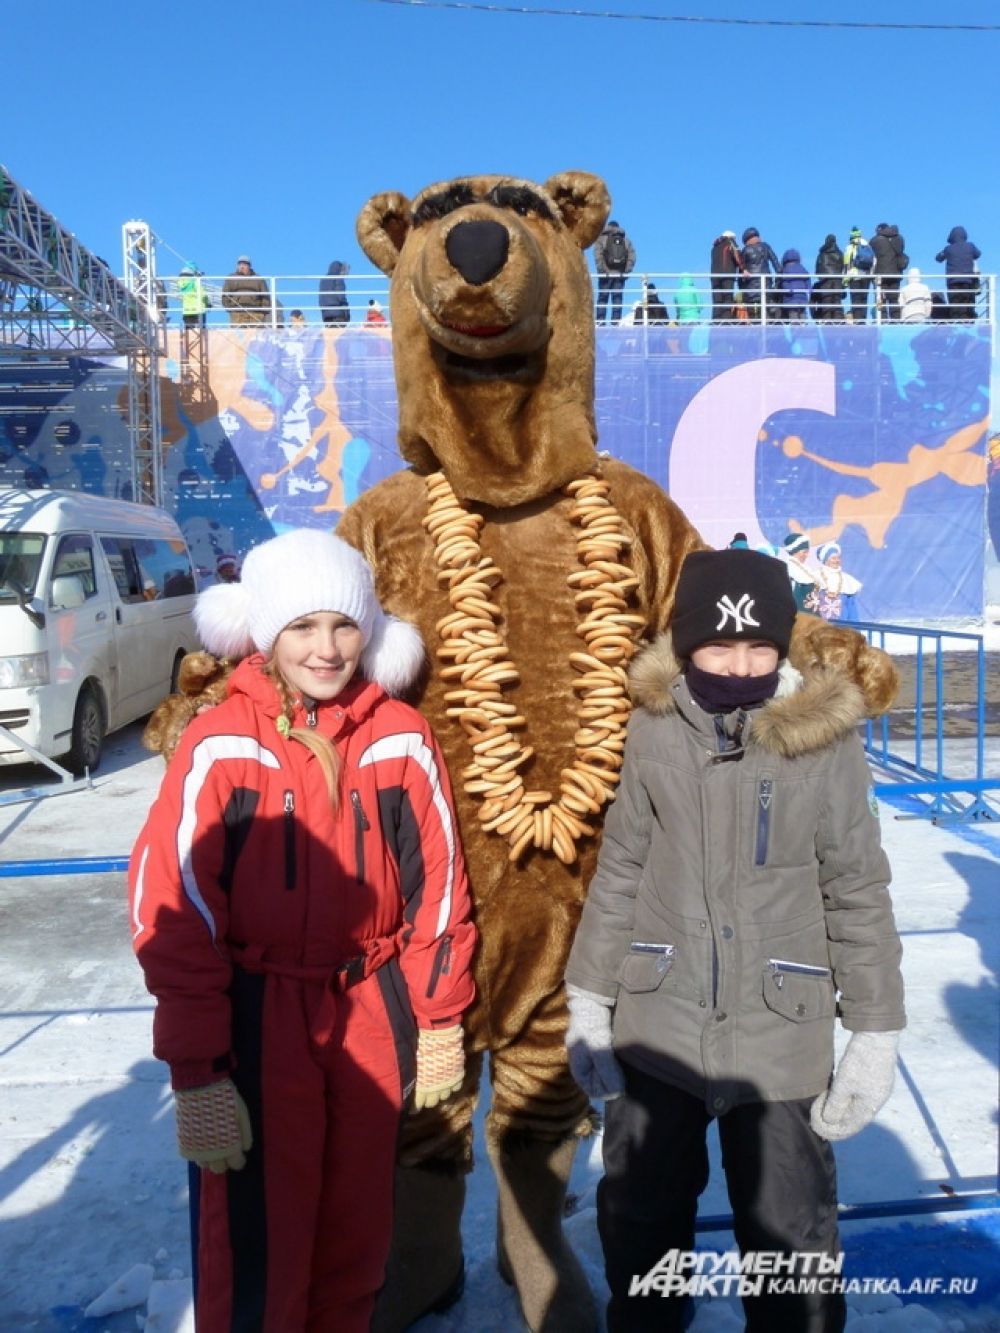 А гости веселятся и фотографируются с медведем, вышедшим из зимней спячки.